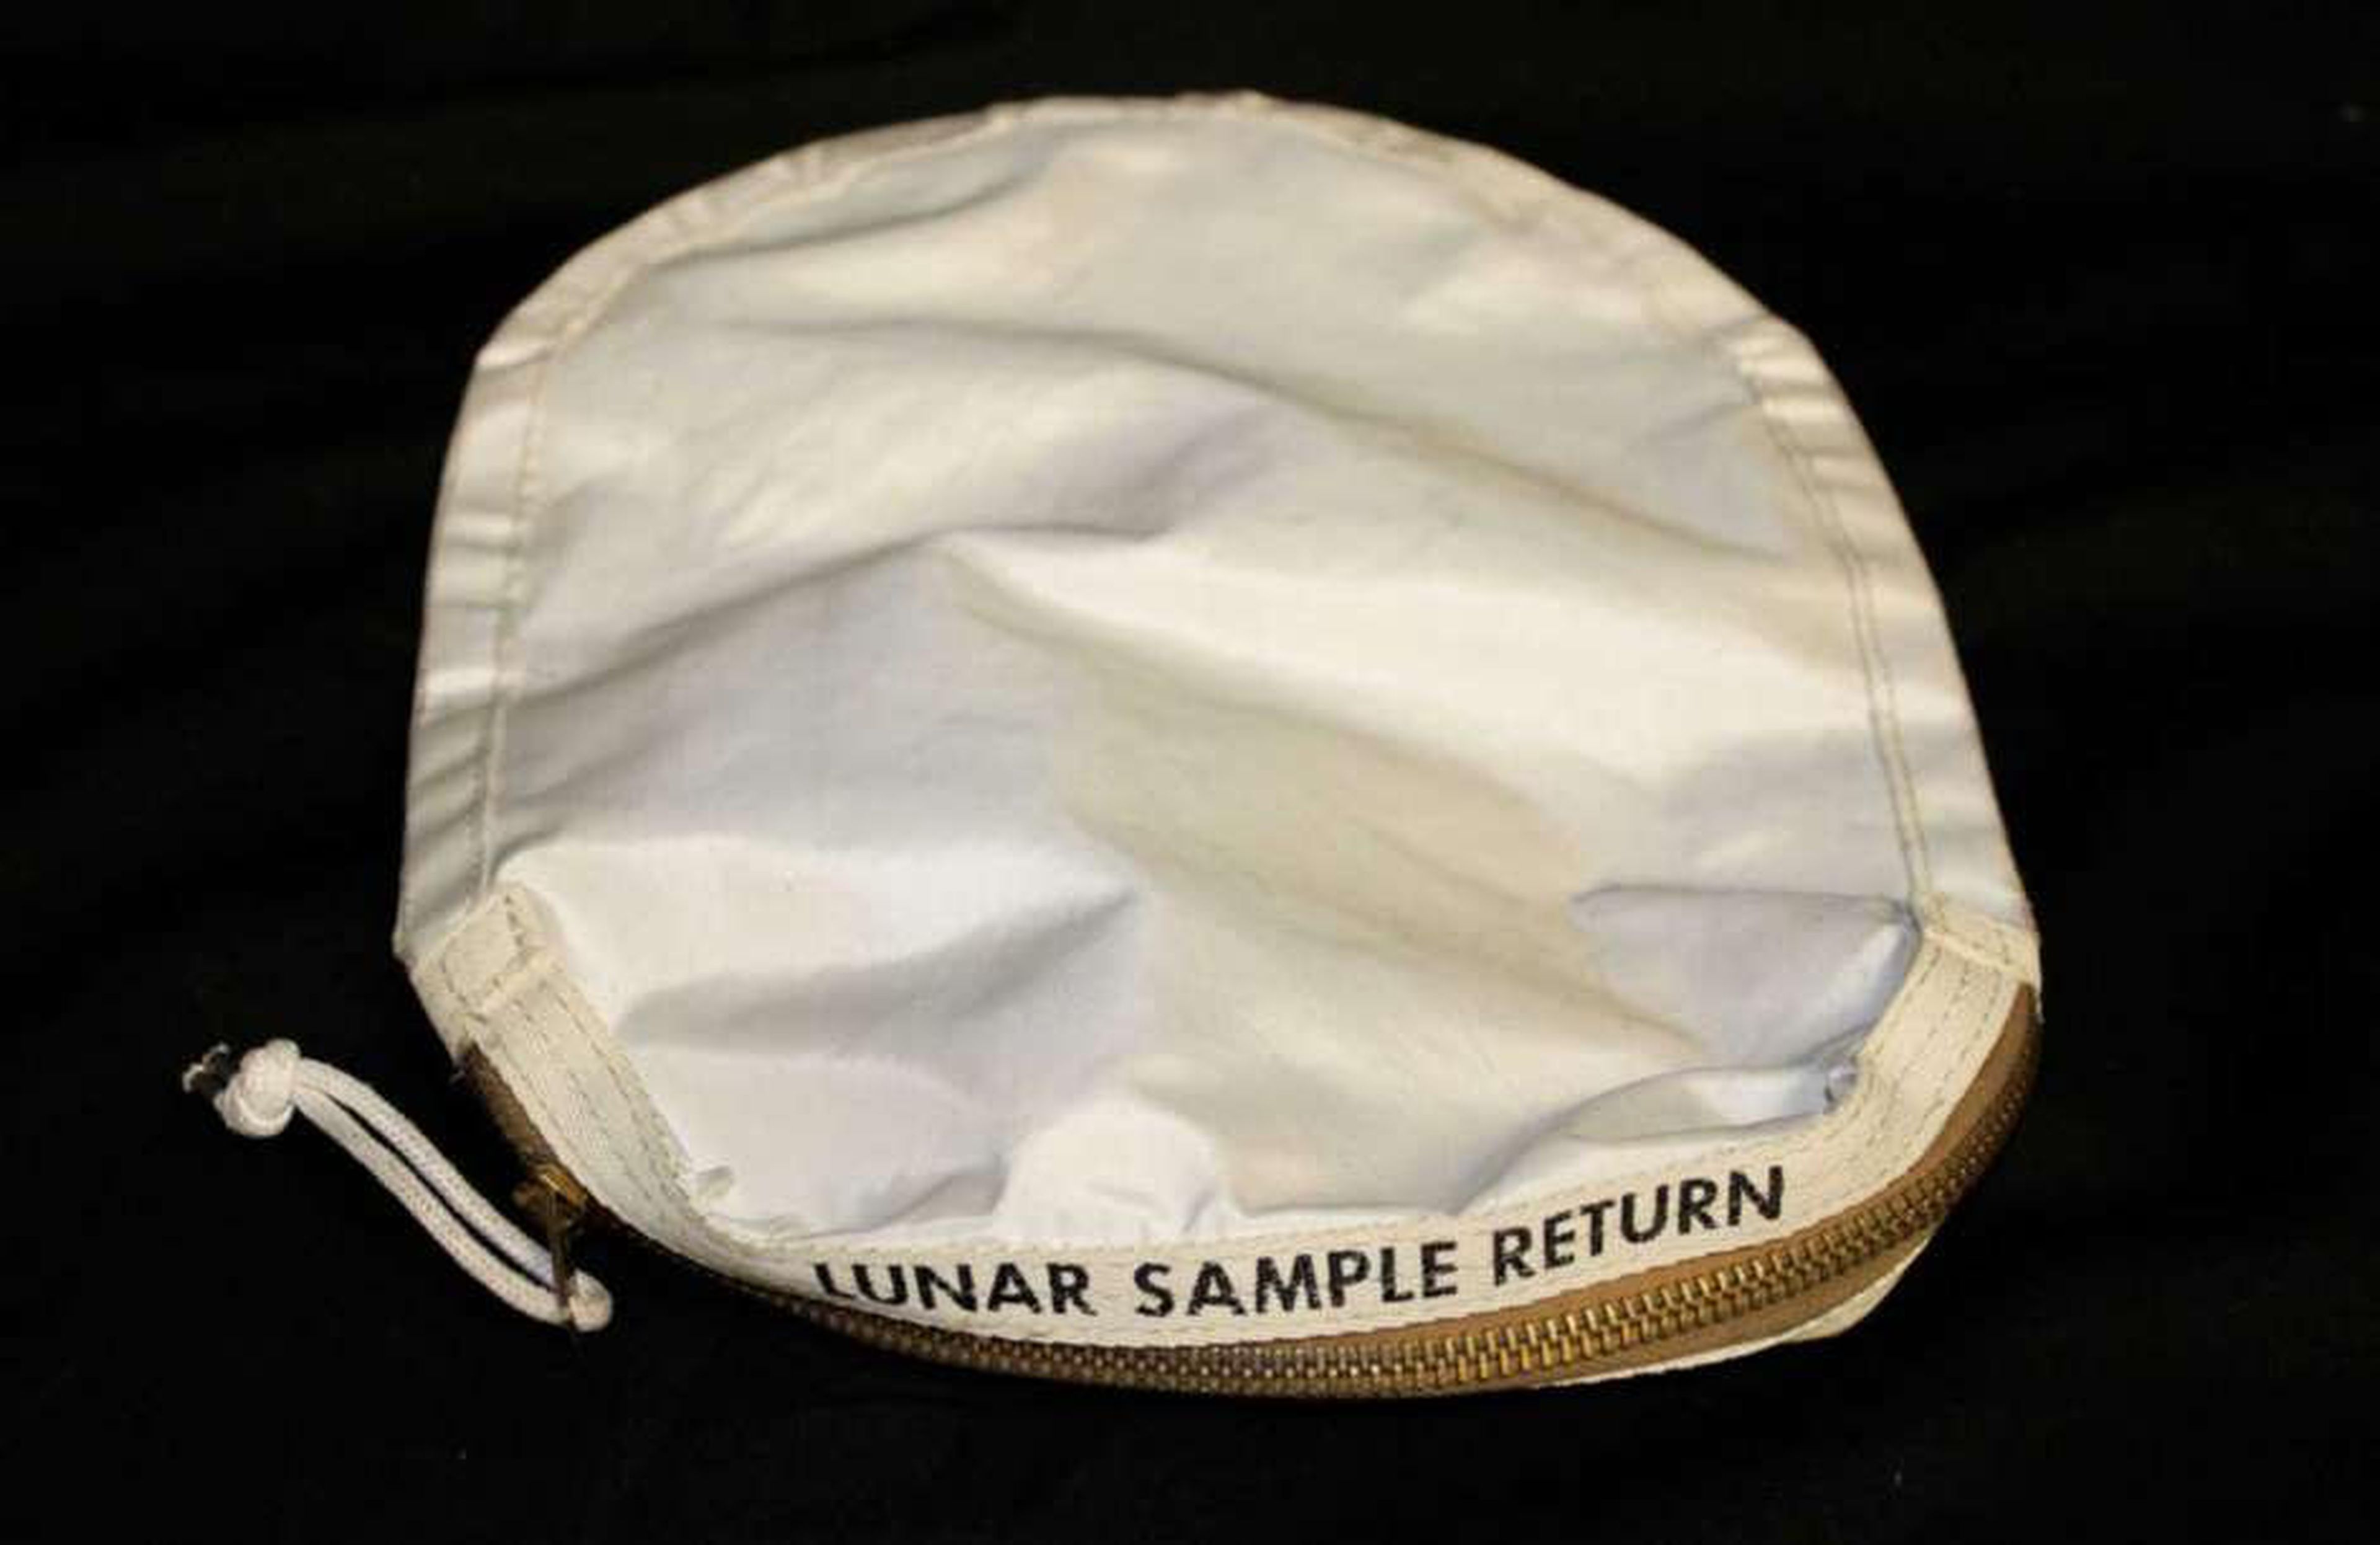 La bolsa de piedras lunares de la NASA, objeto de la demanda de Nancy Carlson, fue utilizada por Neil Armstrong en la misión Apolo 11